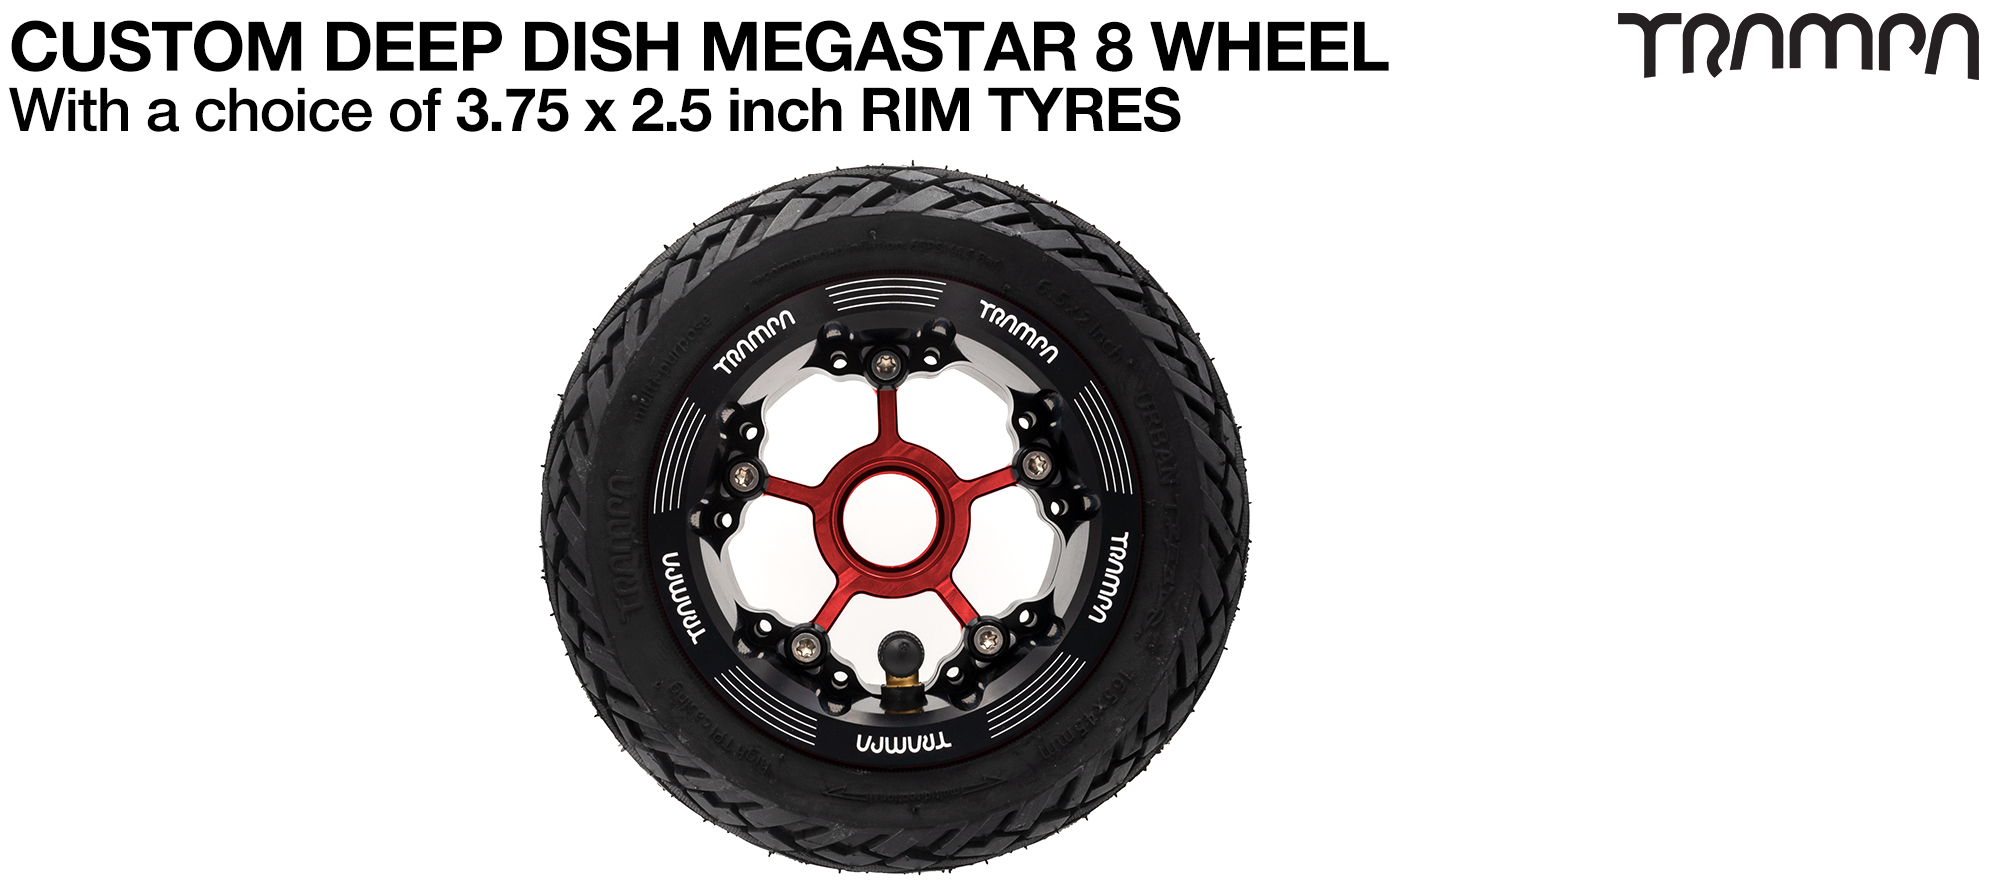 DEEP-DISH MEGASTAR 8 WHEEL - 6 Inch URBAN Tyres  (£80)